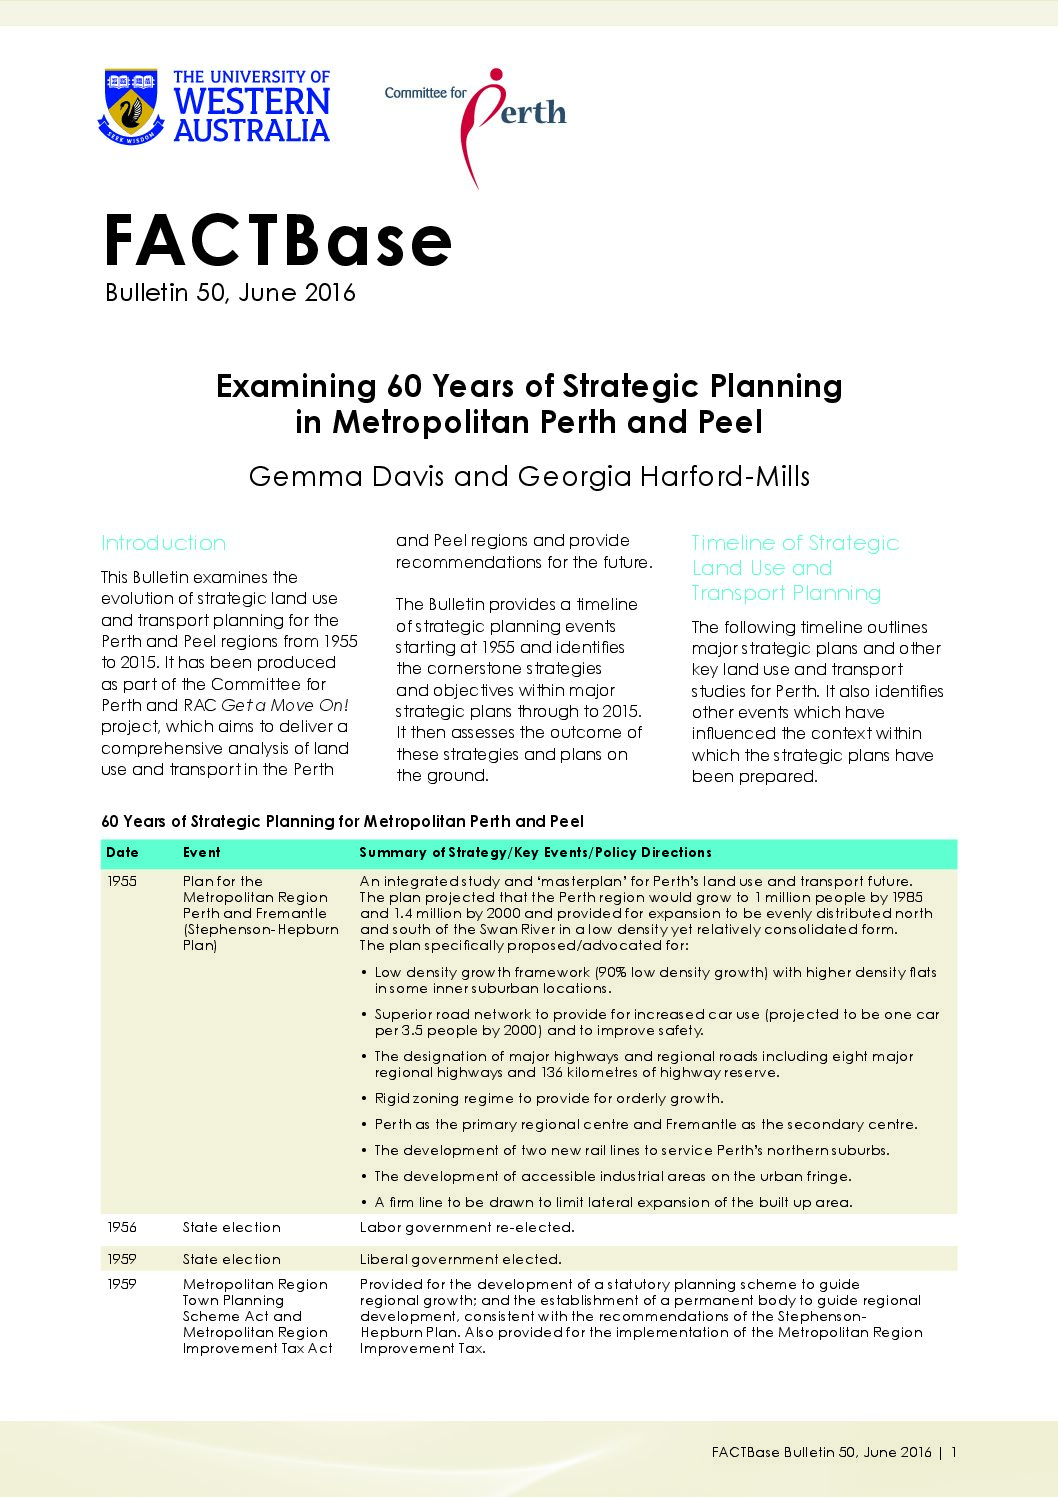 FACTBase Bulletin 50 - June 2016